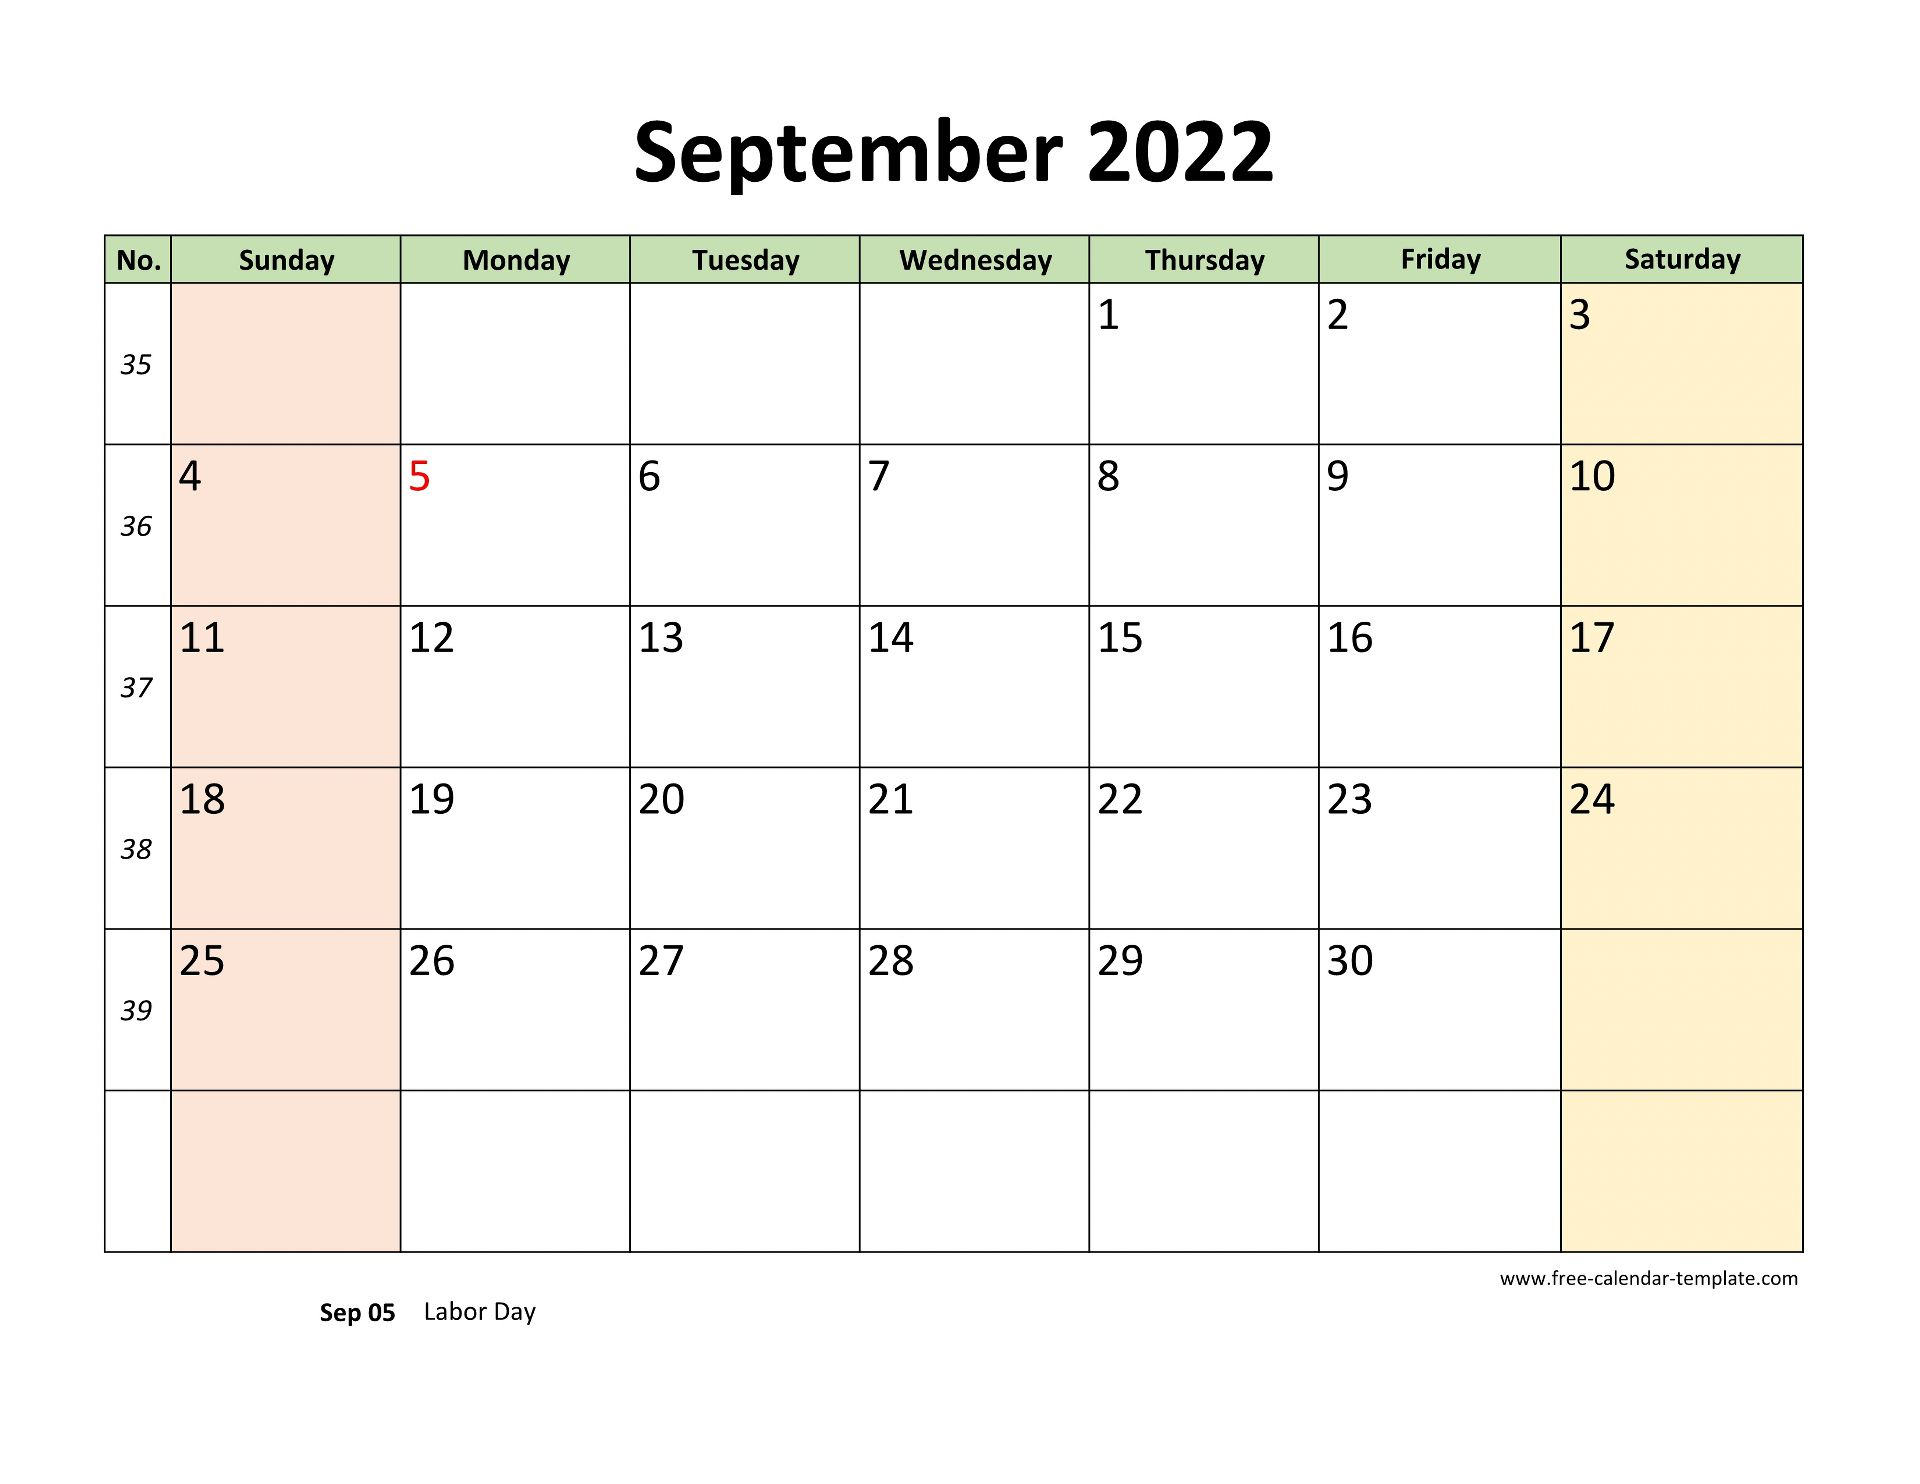 September 2022 Free Calendar Tempplate | Free-Calendar